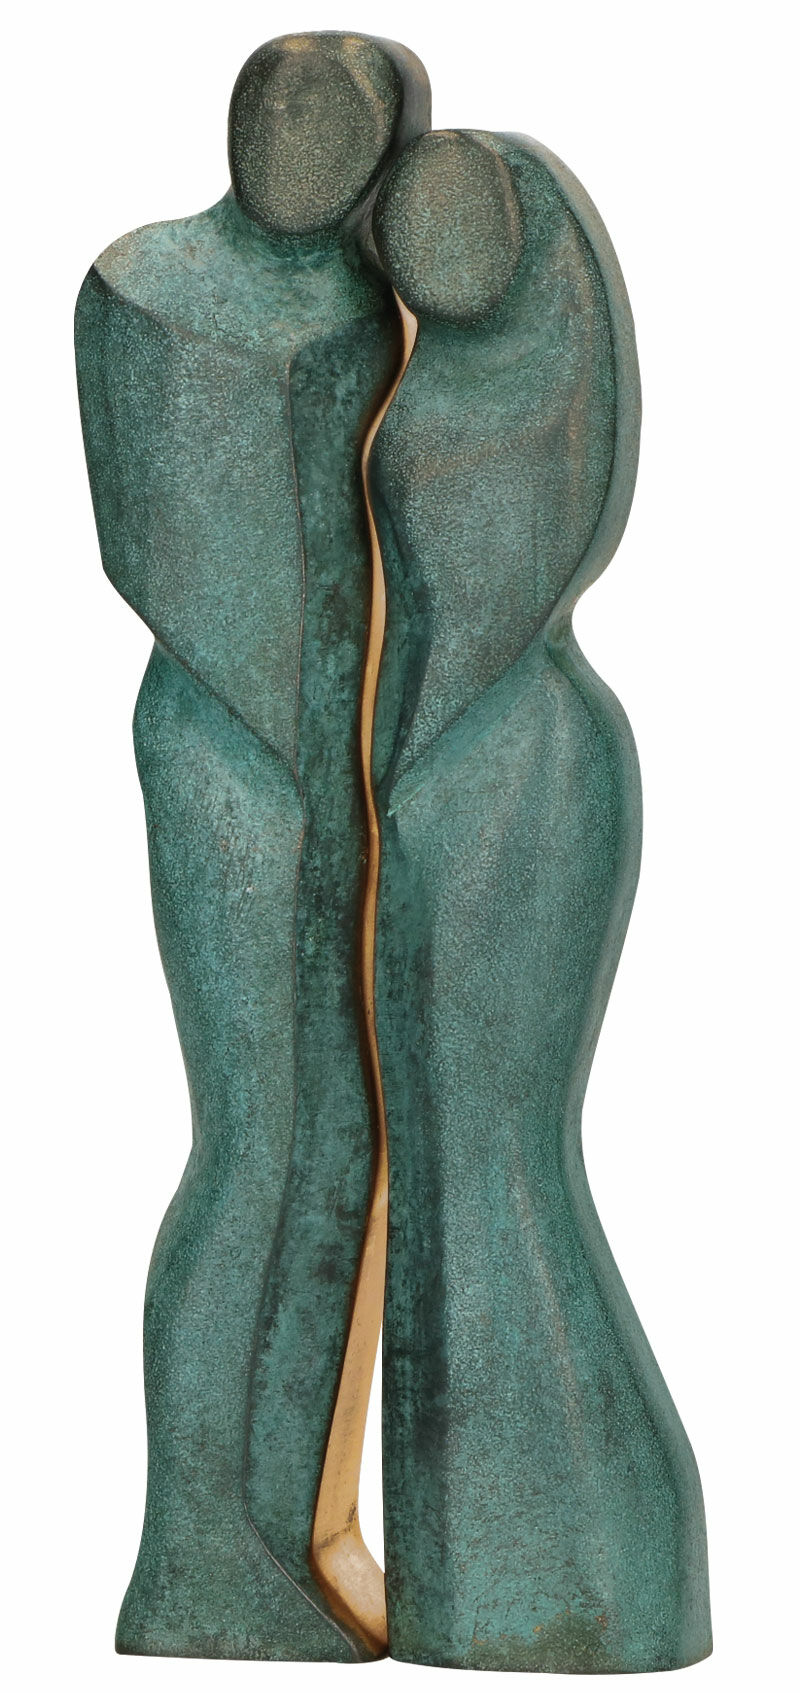 Skulptur "Paar", Bronze von Stefanie von Quast